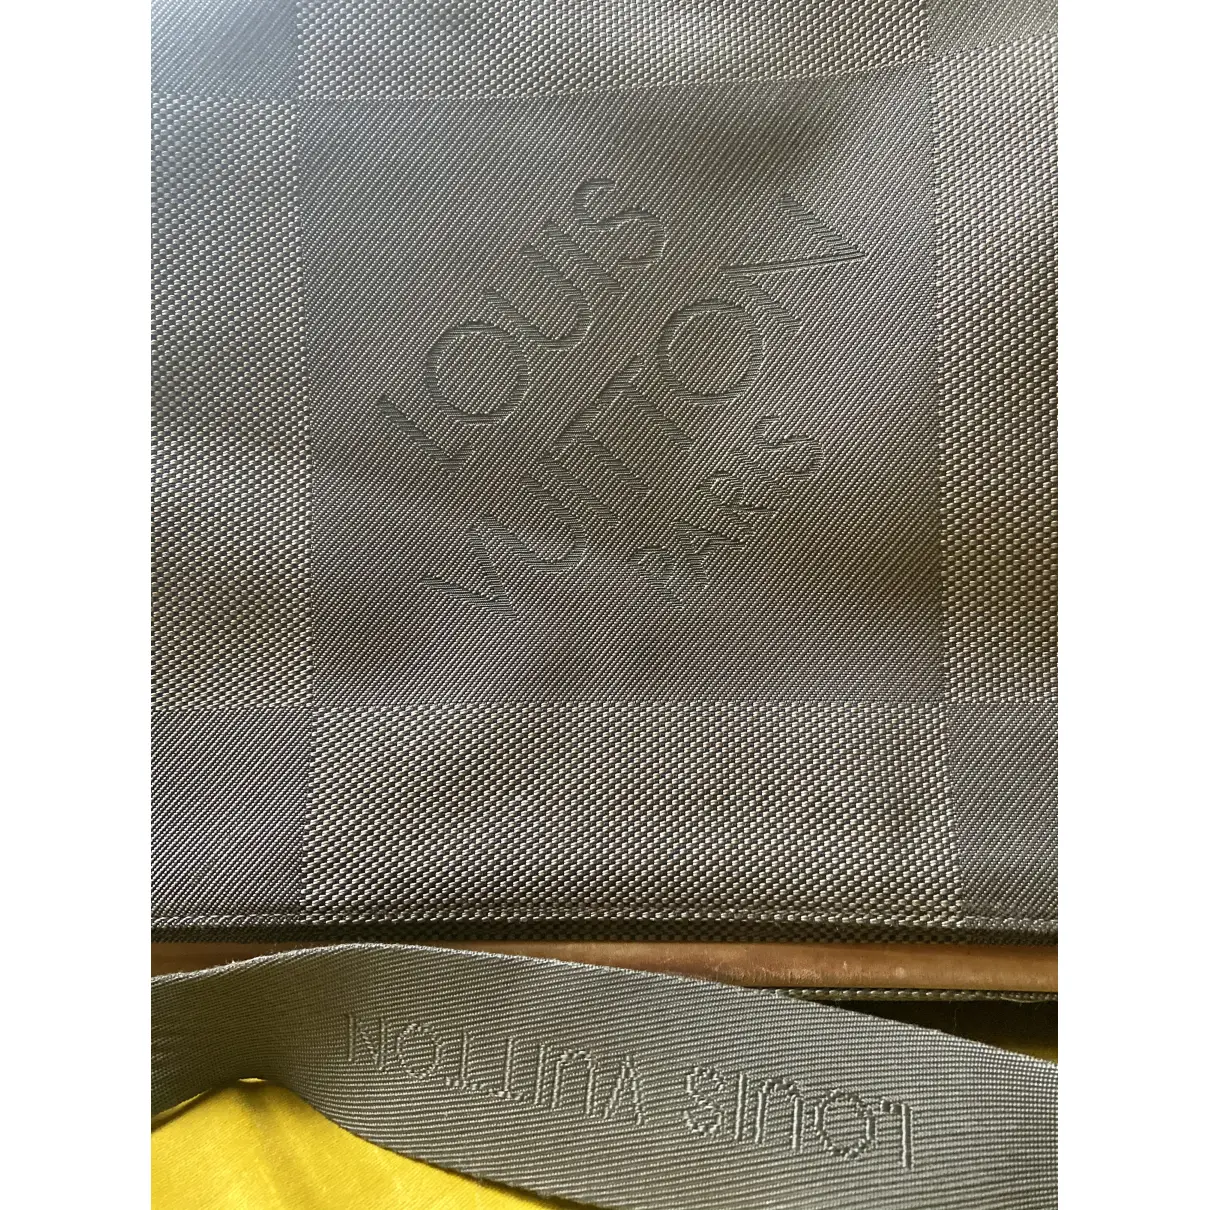 Porte Documents Jour cloth satchel Louis Vuitton